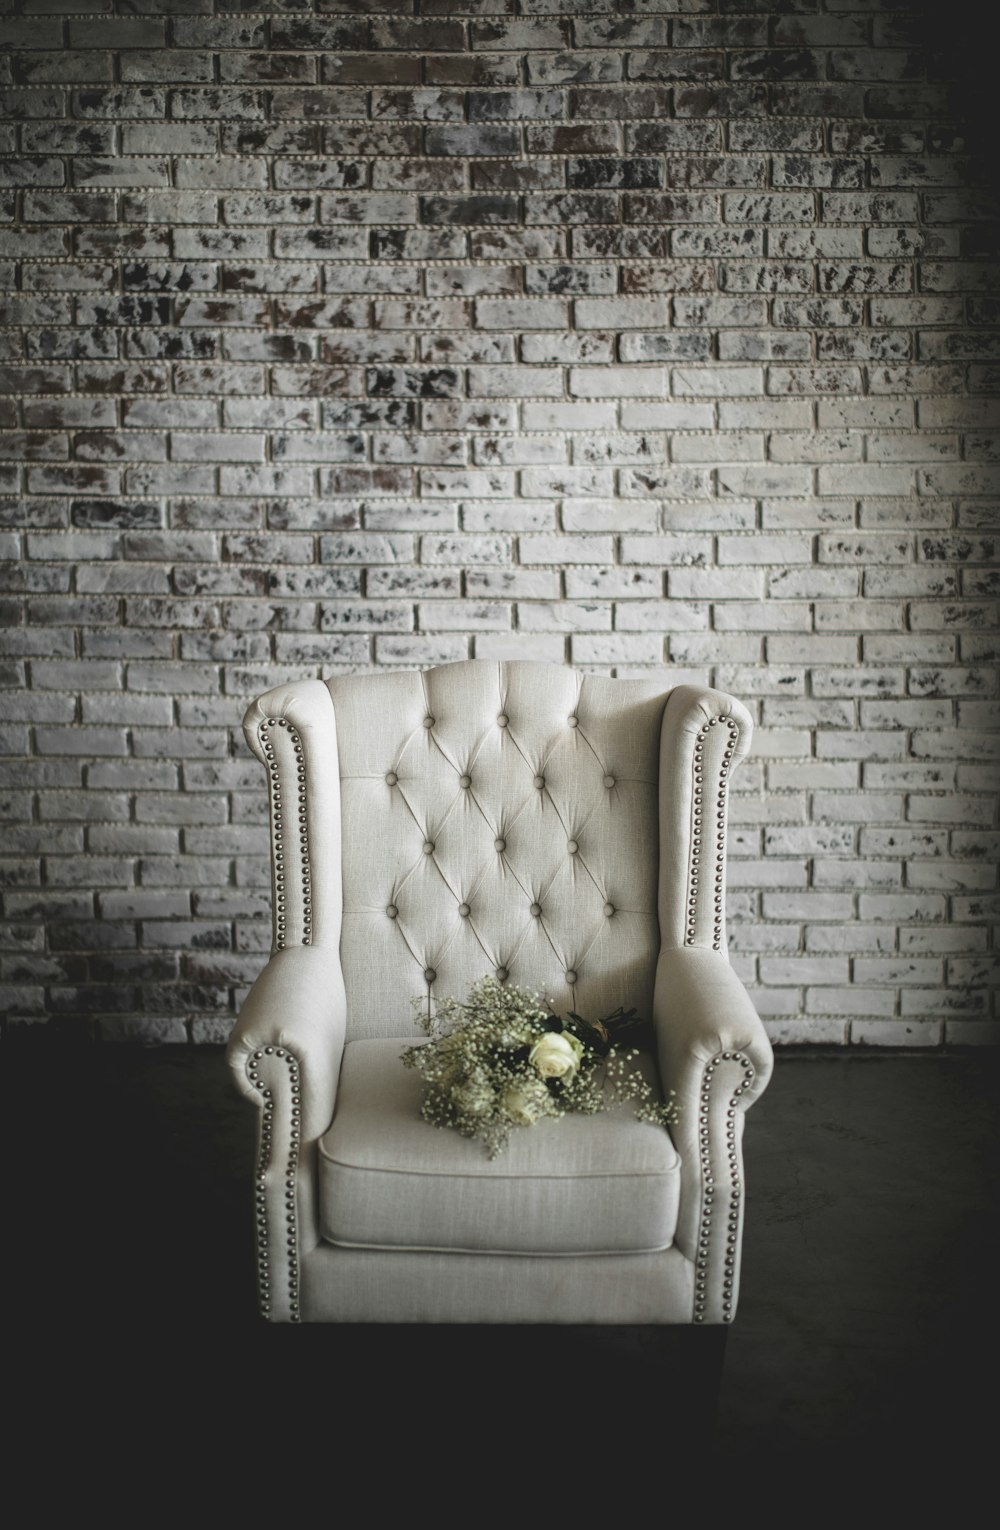 白い肘掛け椅子の上に白い花